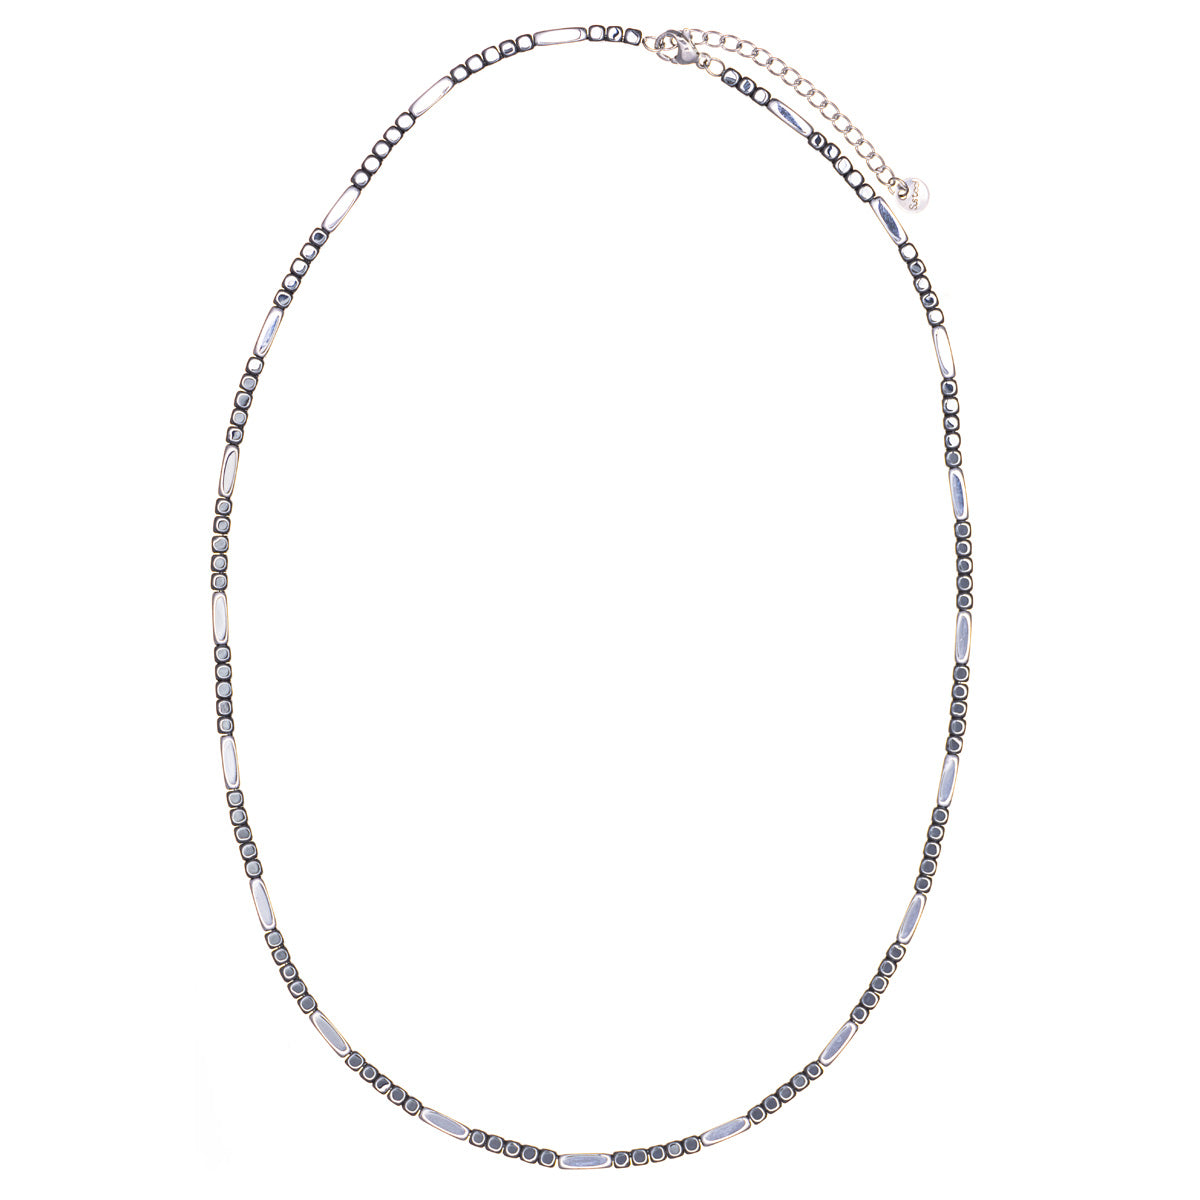 Halsband med hematitpärlor och stålkedja 49cm +5cm (Stål 316L)